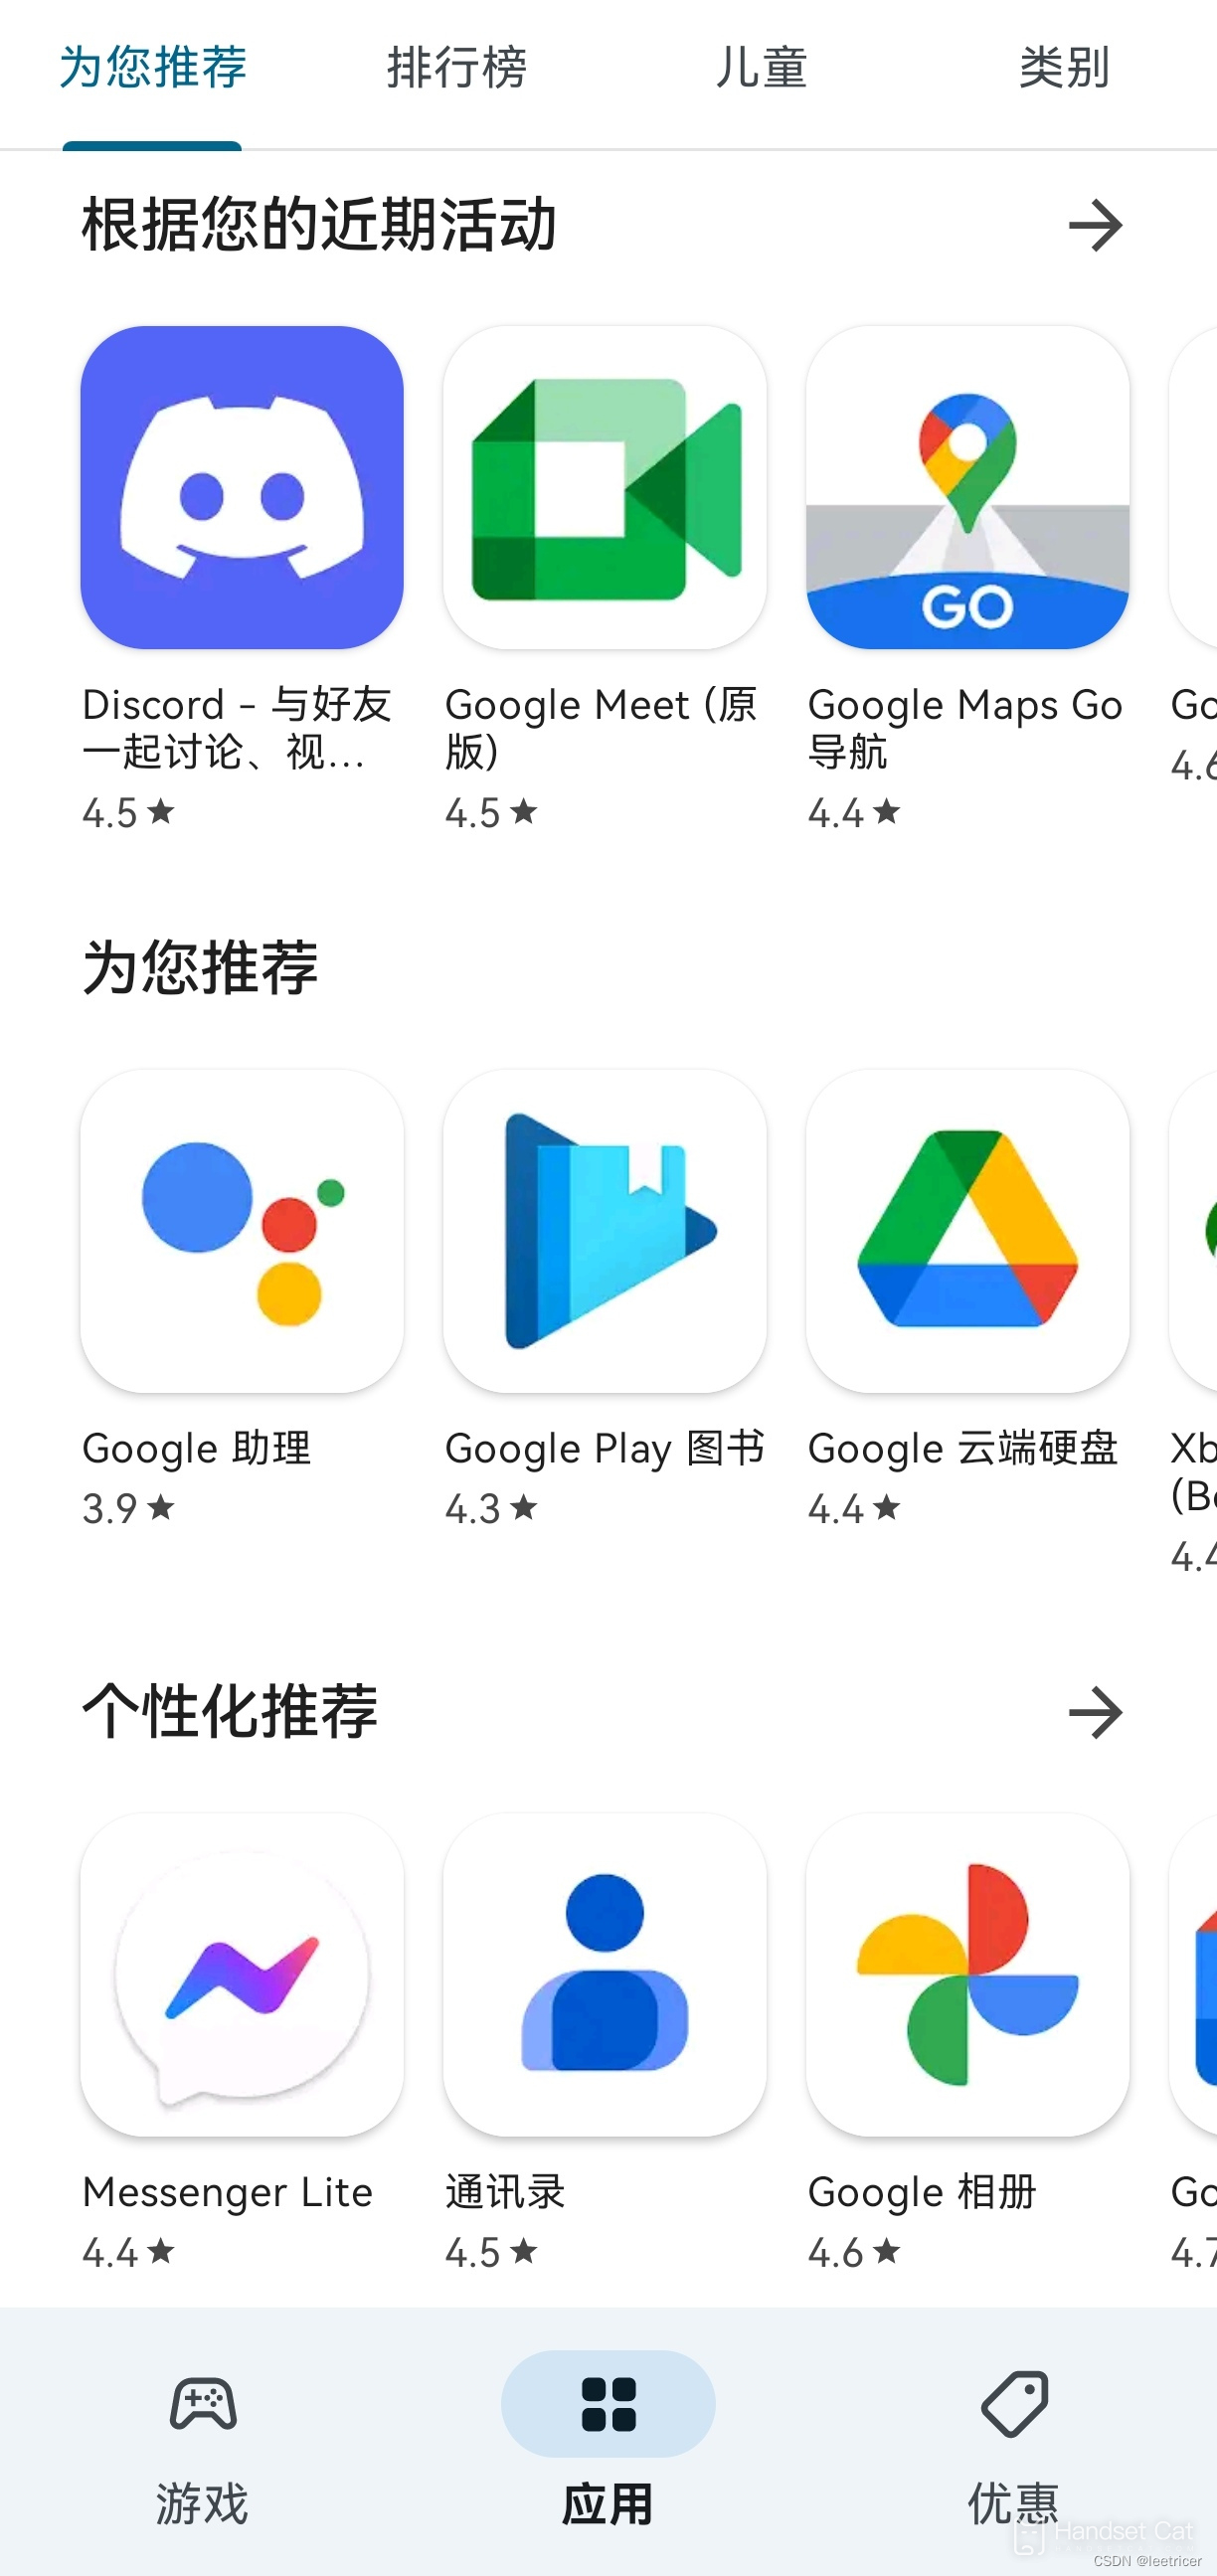 Tutorial de instalación de Google de Hongmeng 3.0